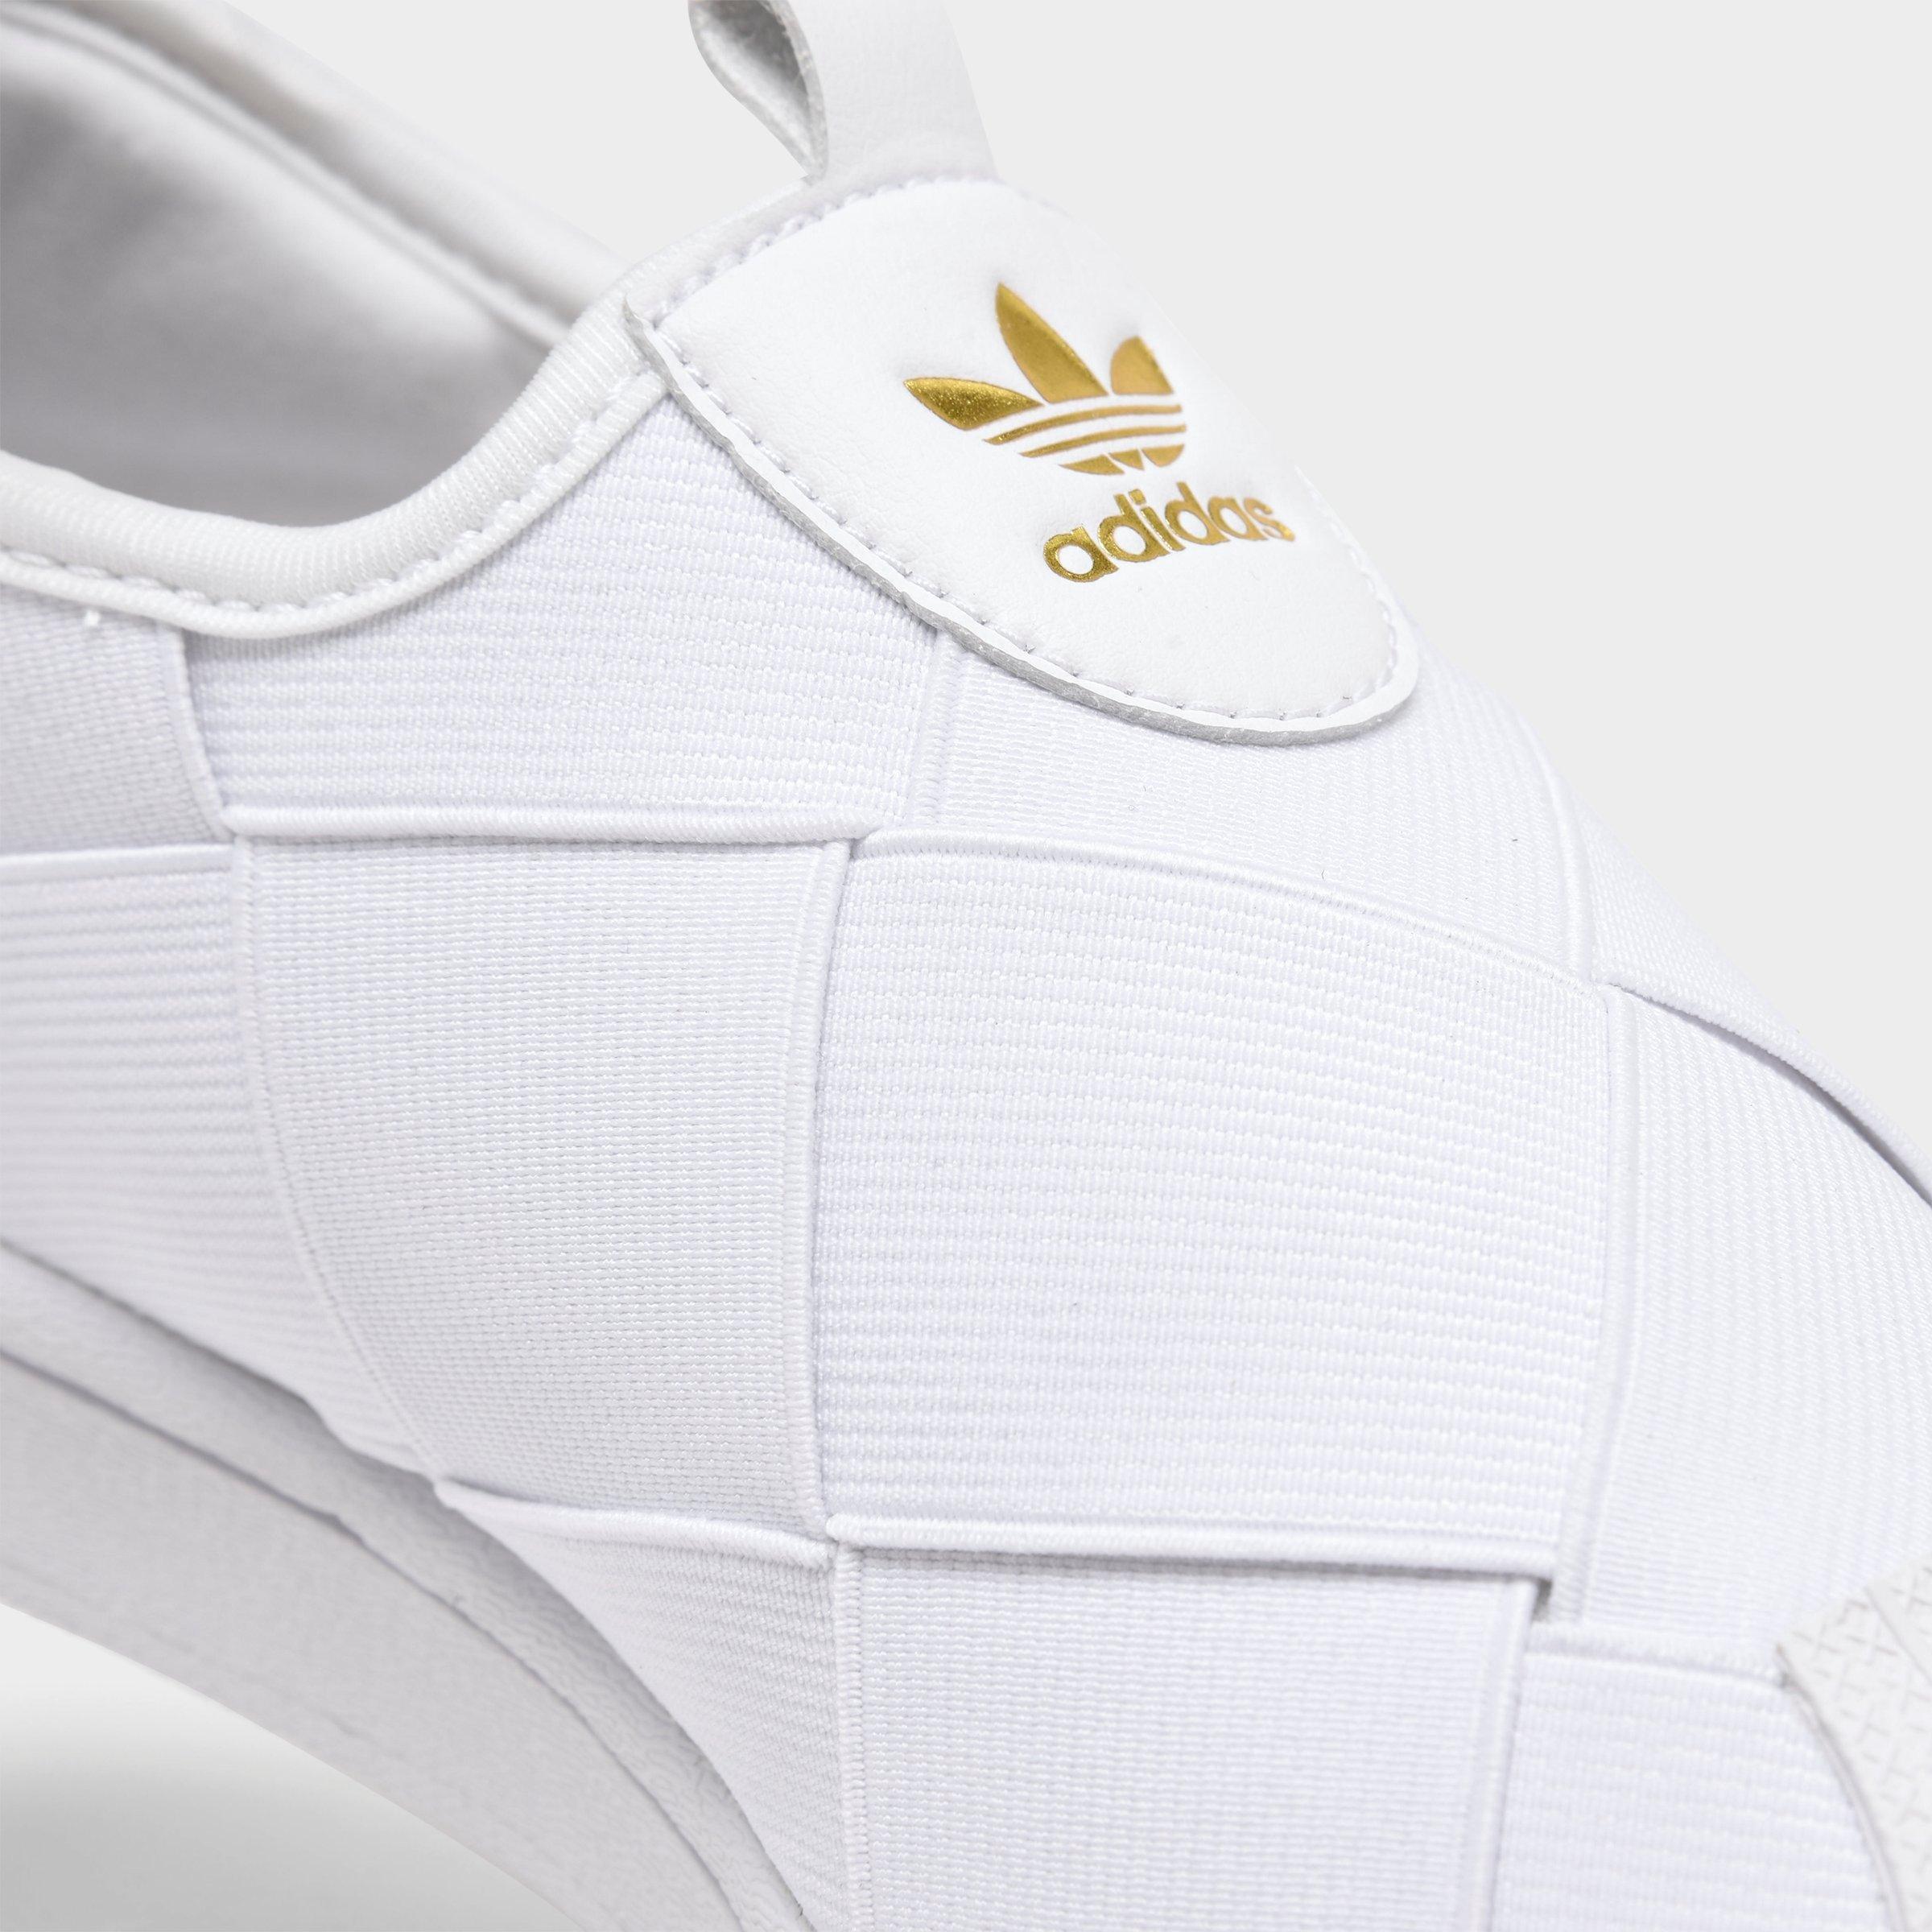 adidas originals superstar slip on white